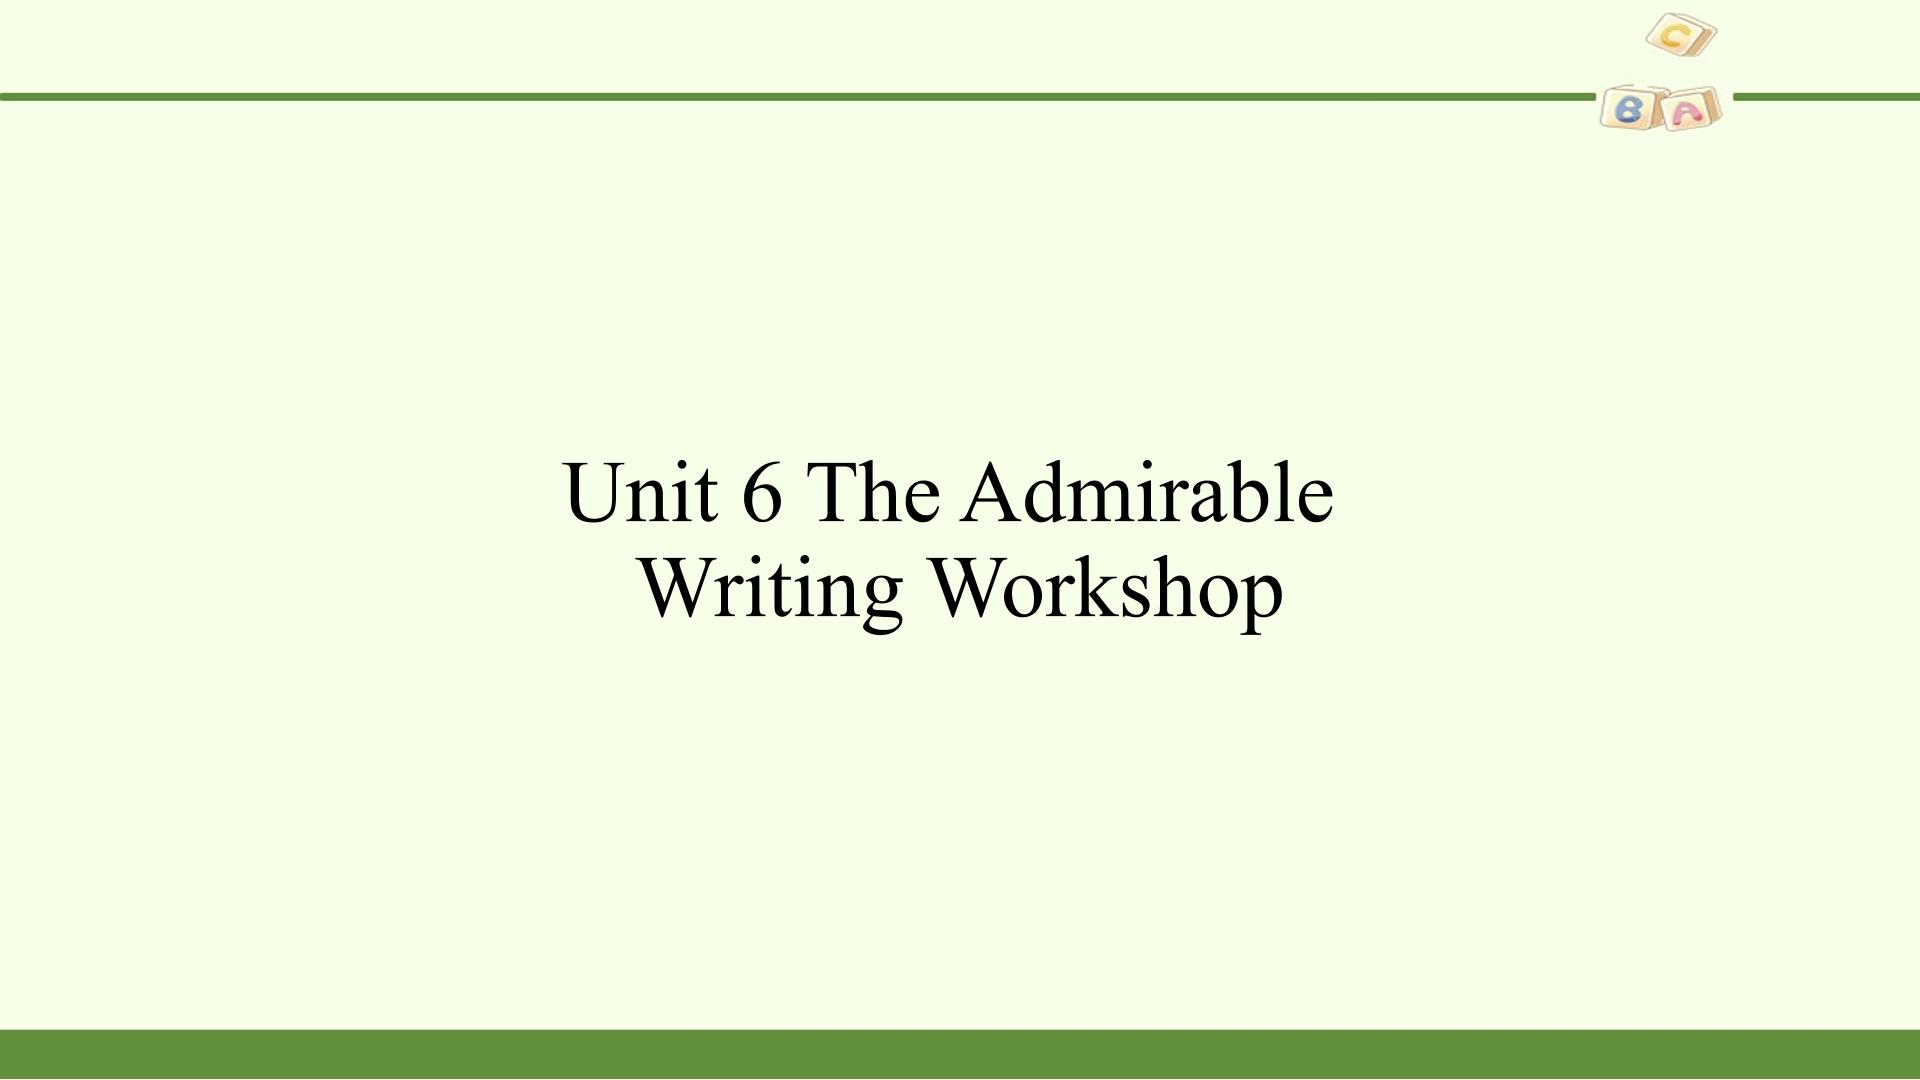 Writing Workshop—A Summary (1)